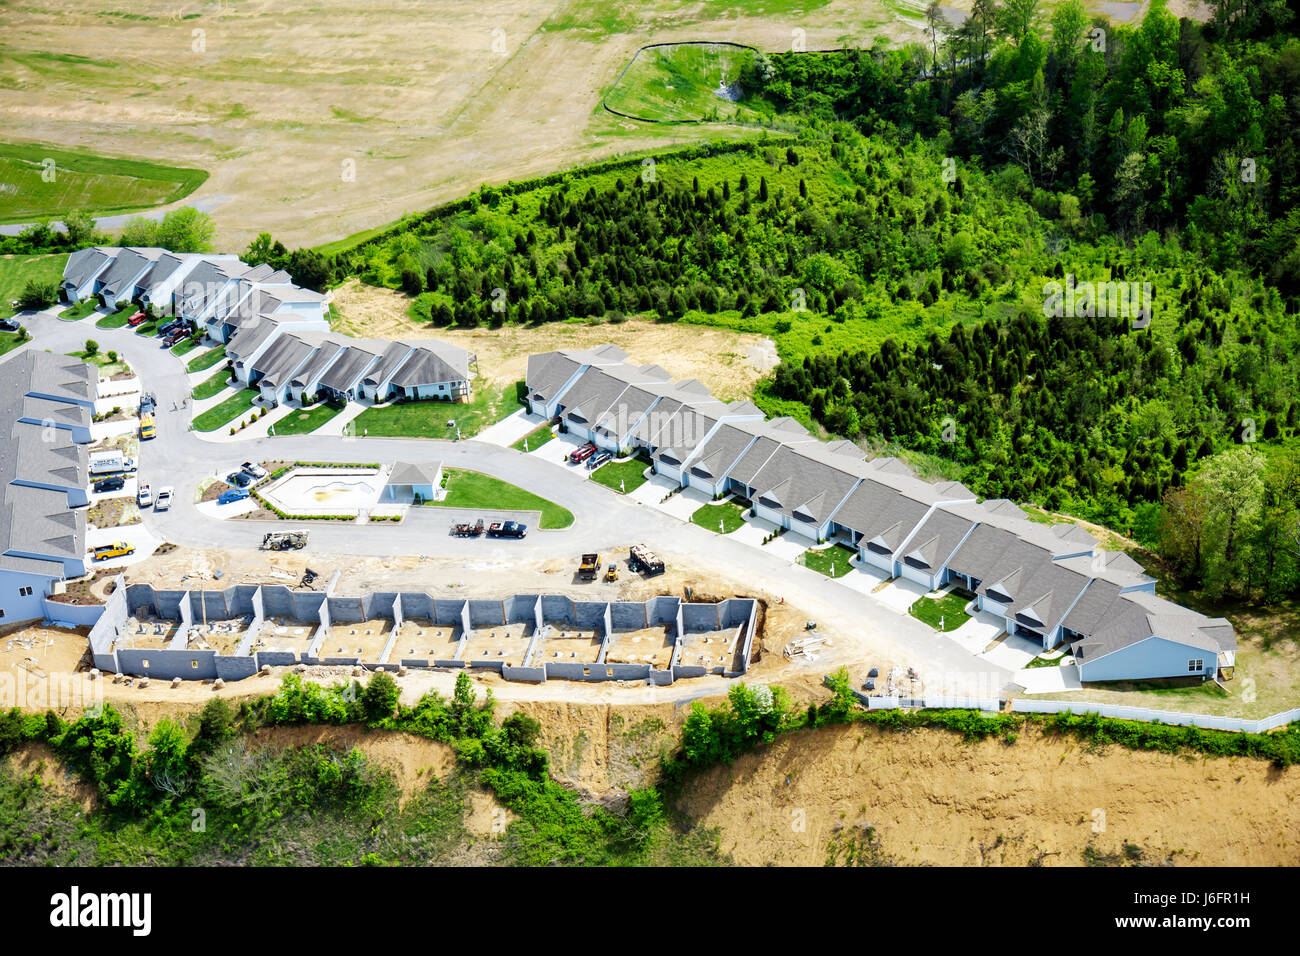 Sevierville Tennessee, Smoky Mountains, maison de ville, sous un nouveau chantier de construction de bâtiment, vue aérienne de dessus, TN080501049 Banque D'Images